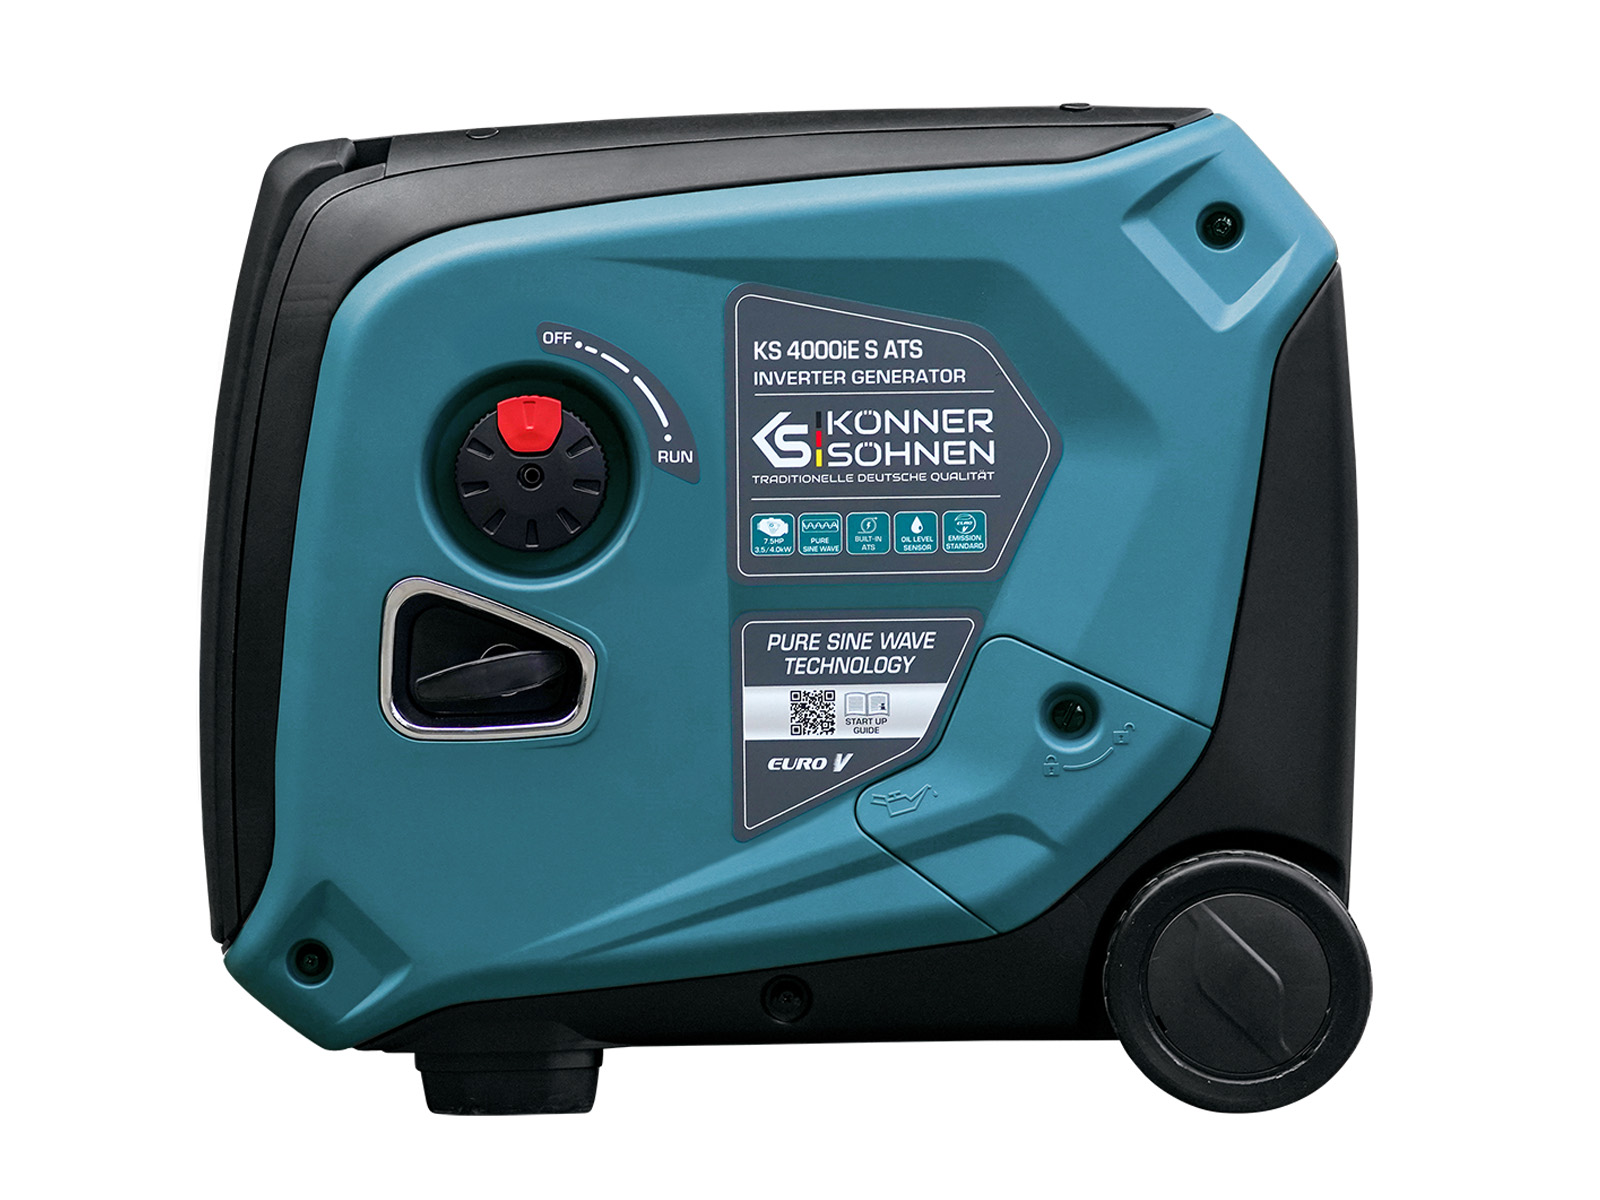 Inverter-Generator KS 4000iE S ATS Version 2